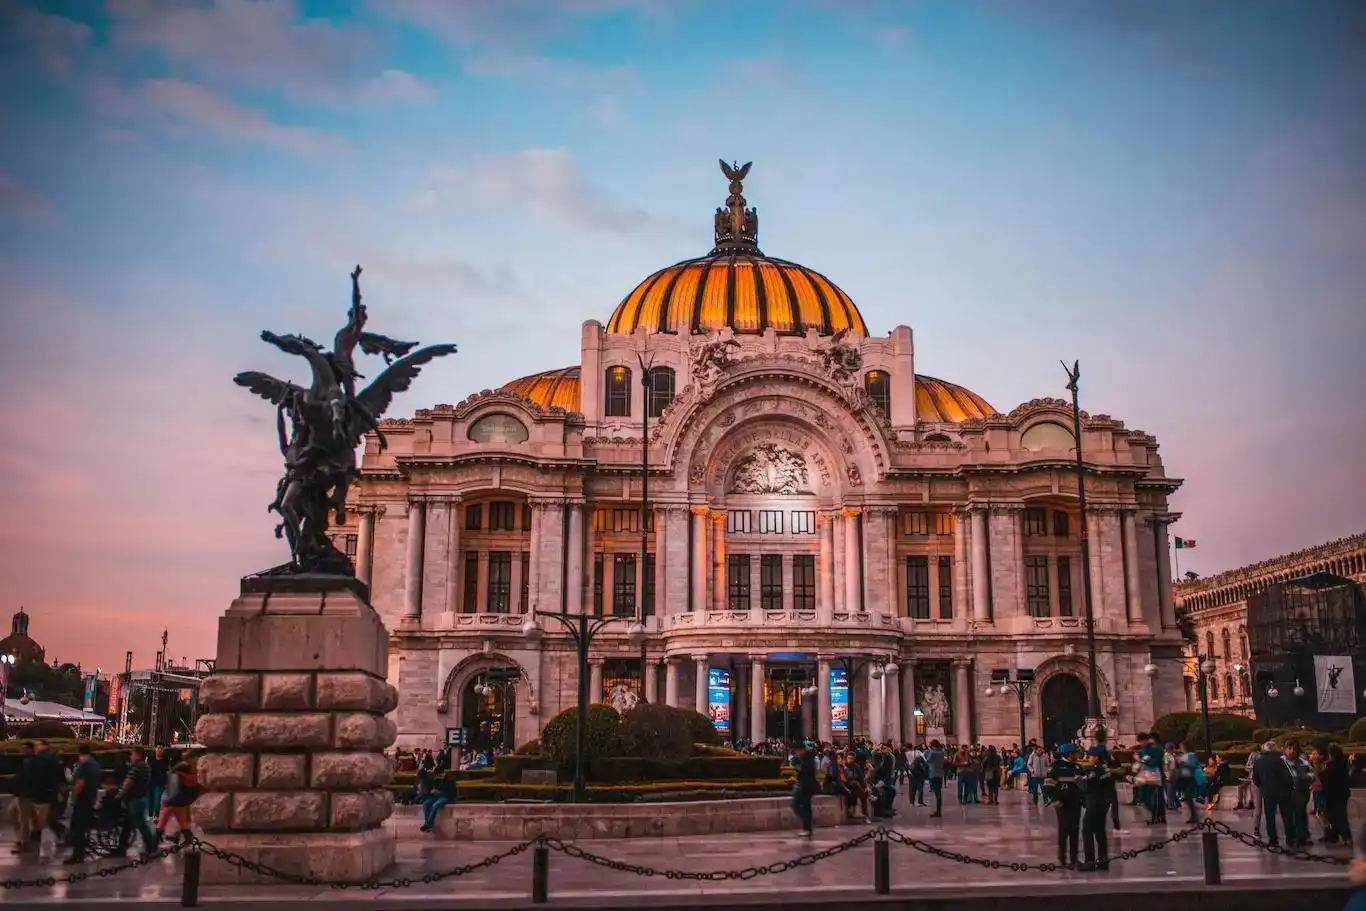 People standing in front of the Palacio de Bellas Artes in Mexico City.